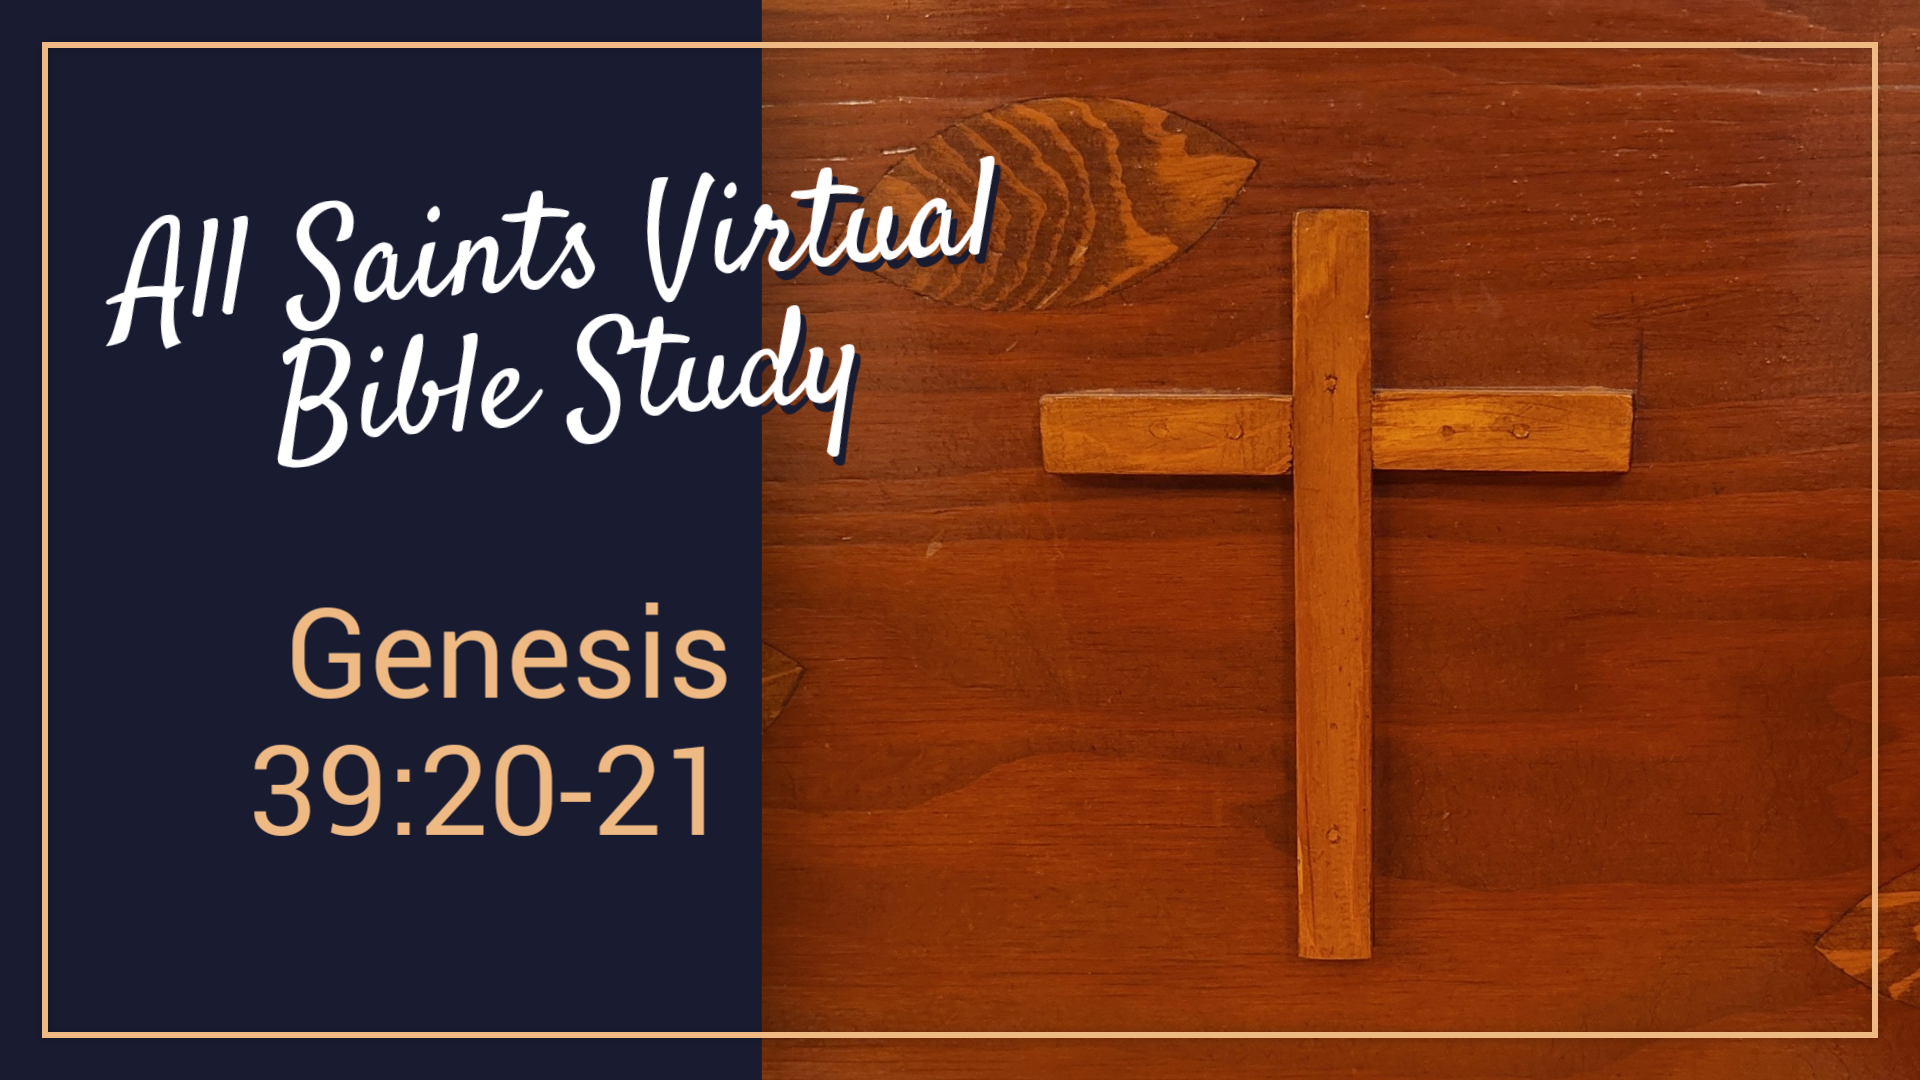 All Saints Virtual Bible Study - Genesis 39:20-21